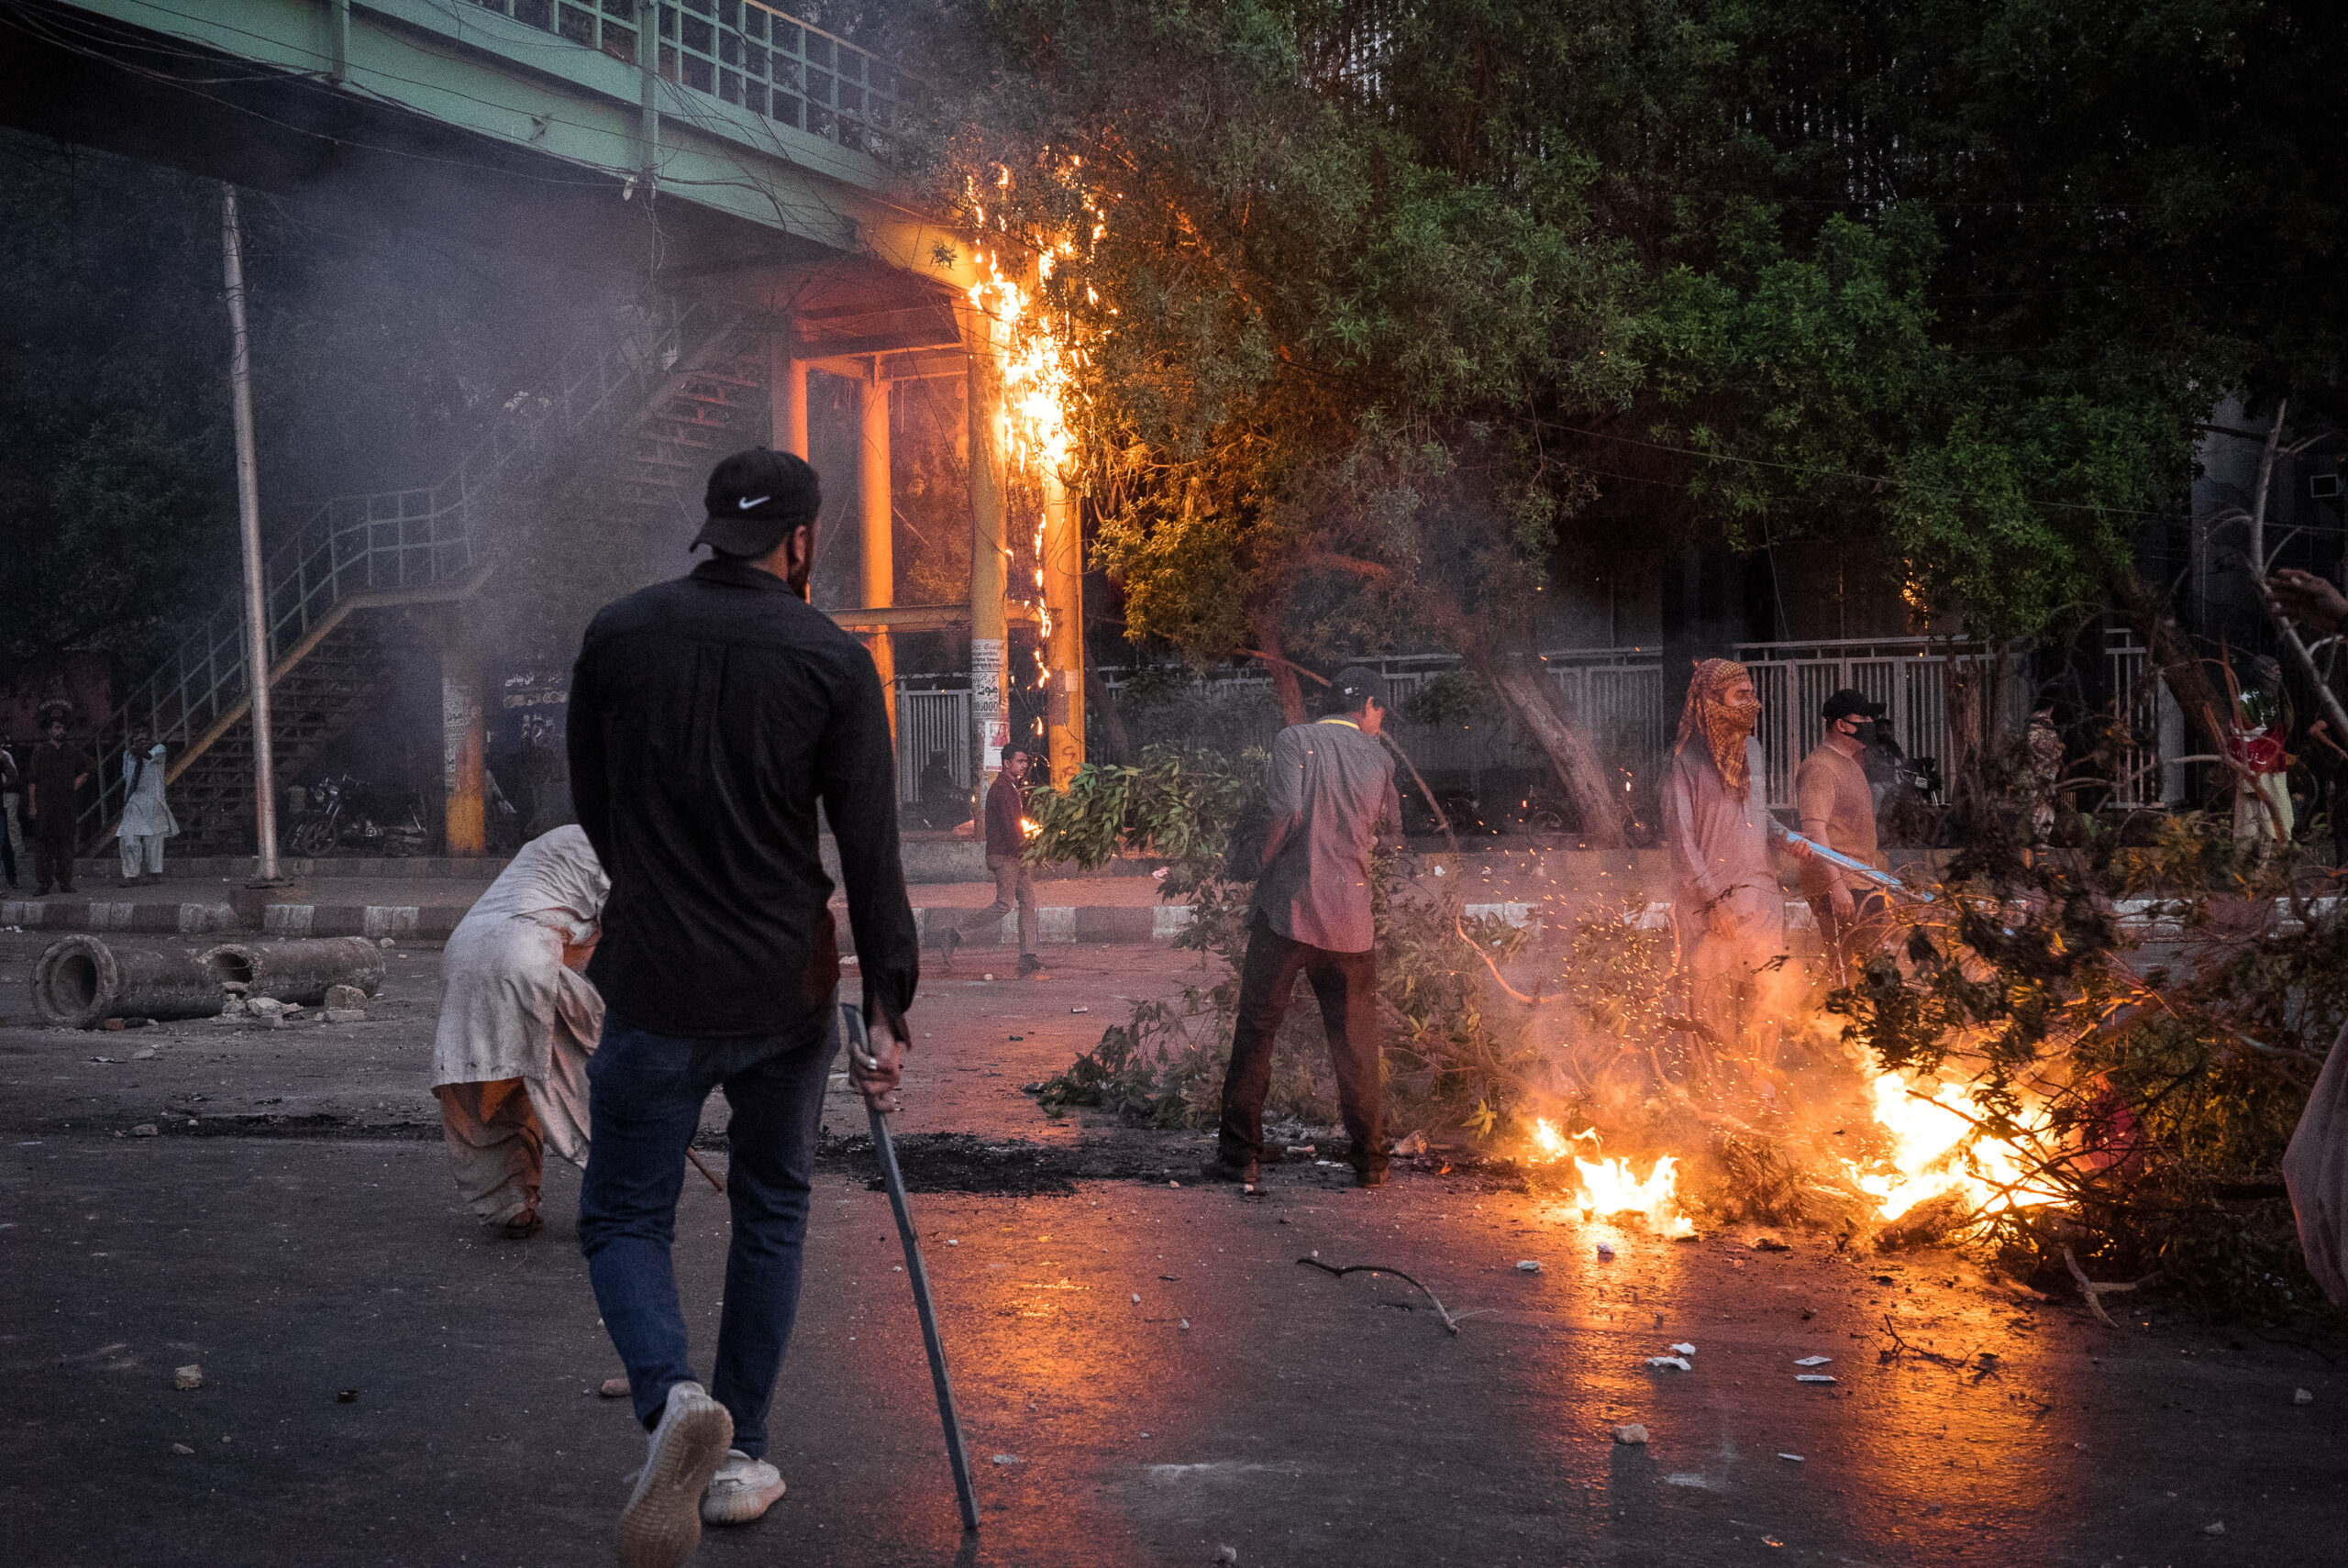 Barricada incendiada por partidarios del PTI, Karachi, 9 de mayo. © Laurent Gayer